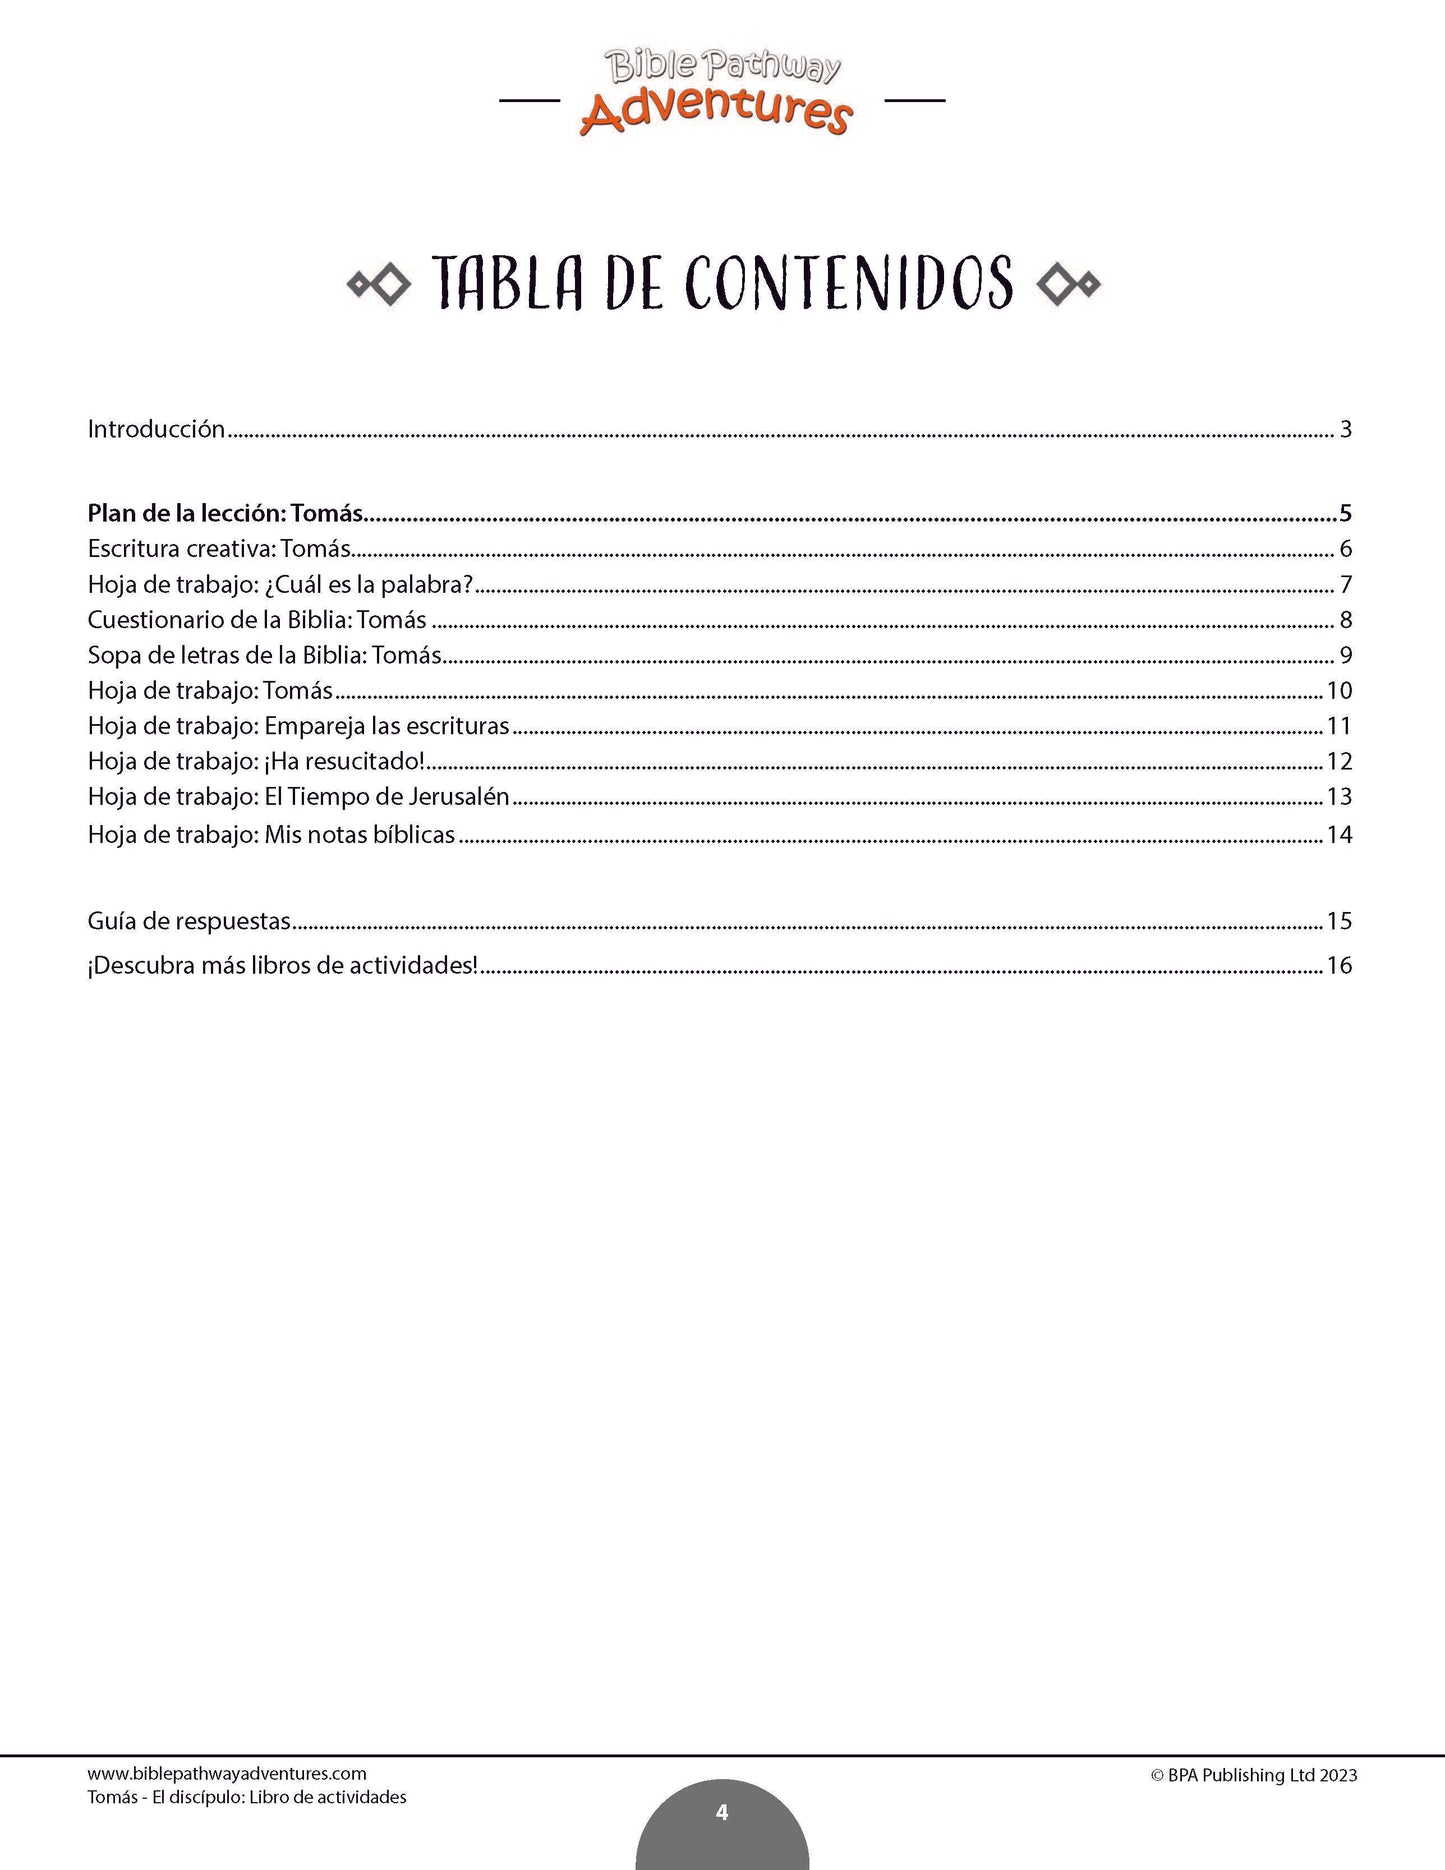 Tomás - El discípulo: Libro de actividades (PDF)